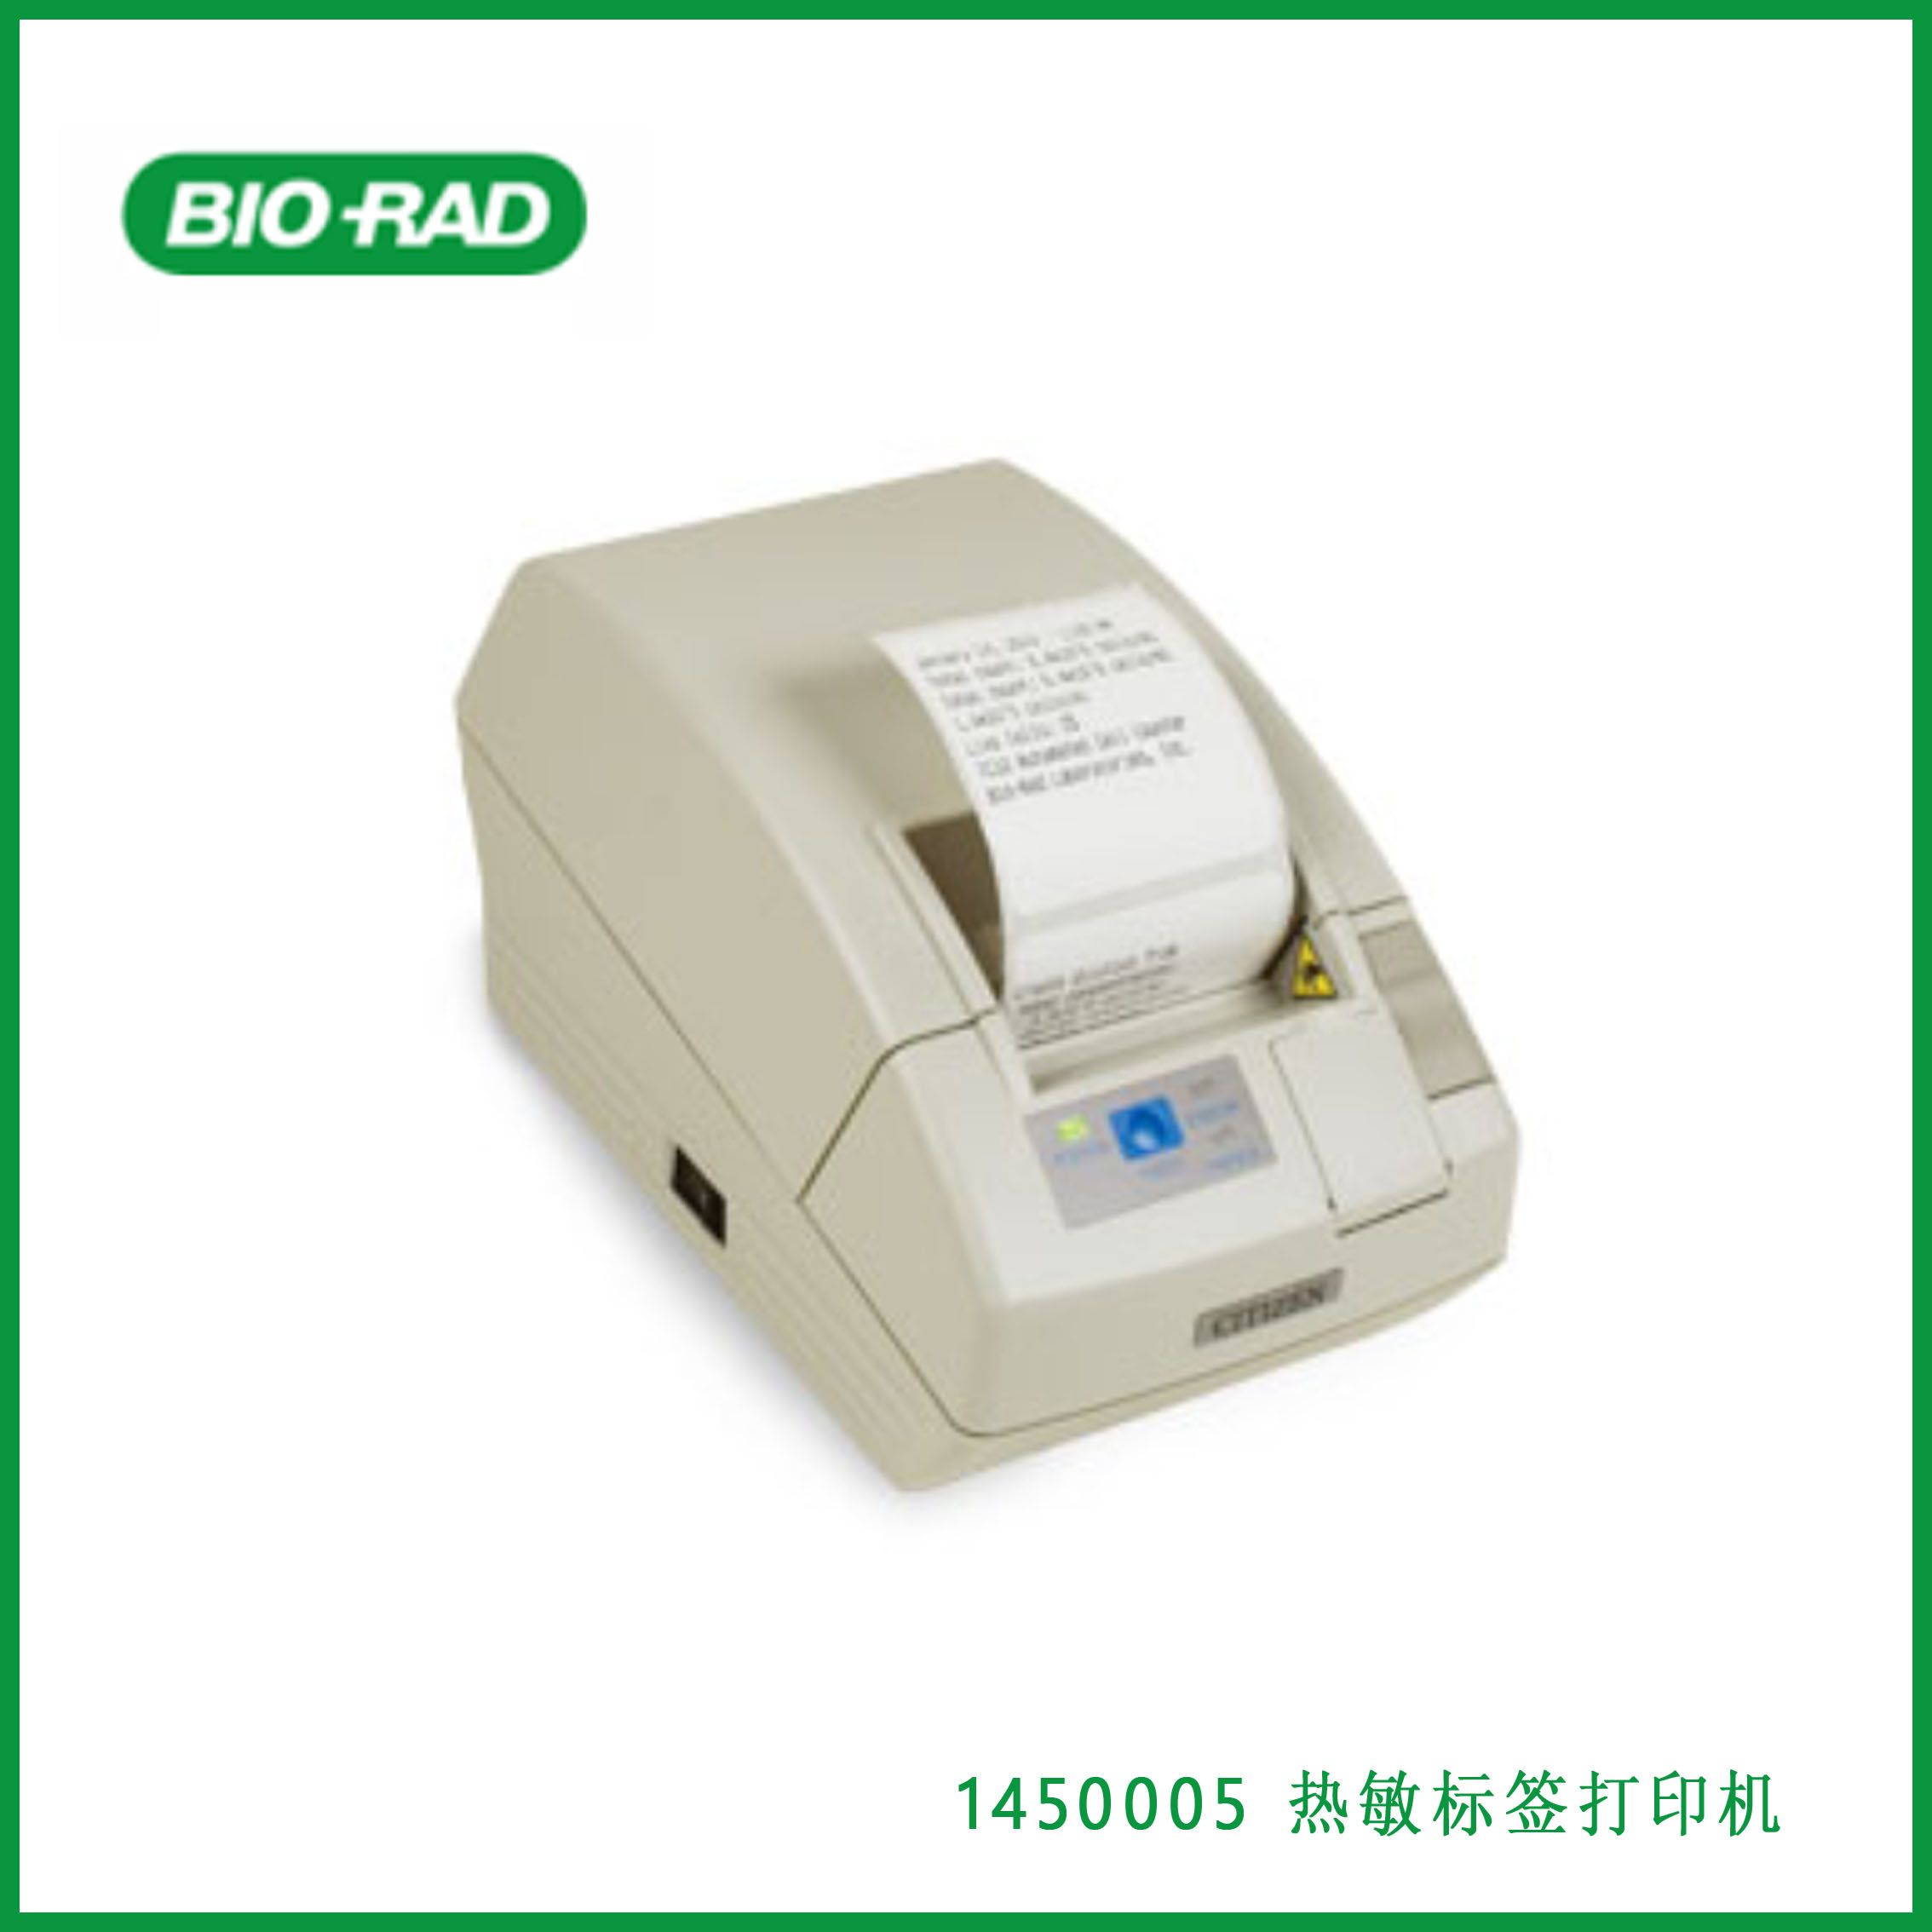 伯乐Bio-Rad 1450005Thermal Label Printer热敏标签打印机